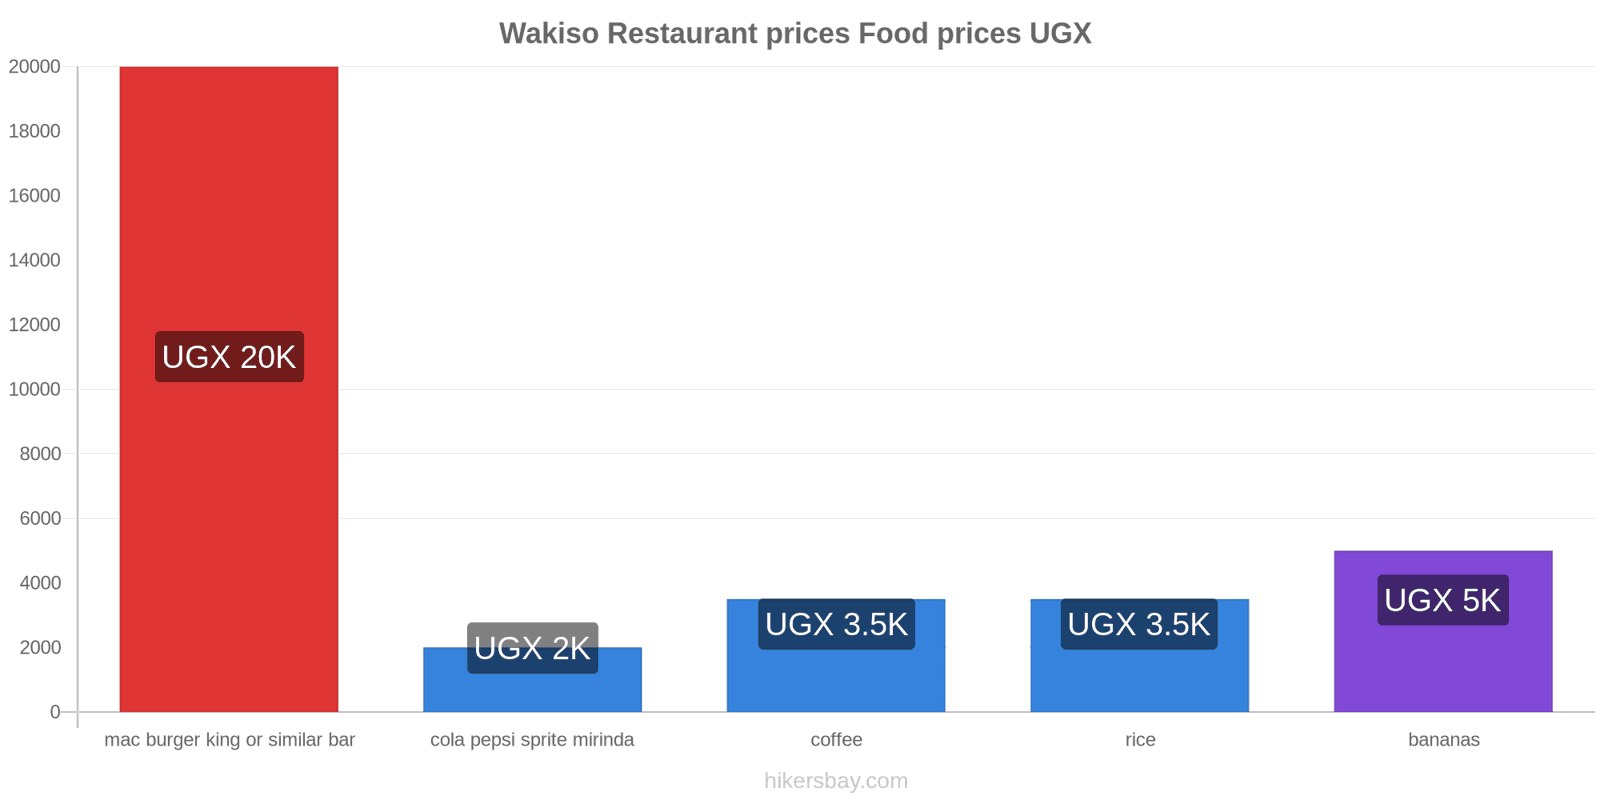 Wakiso price changes hikersbay.com